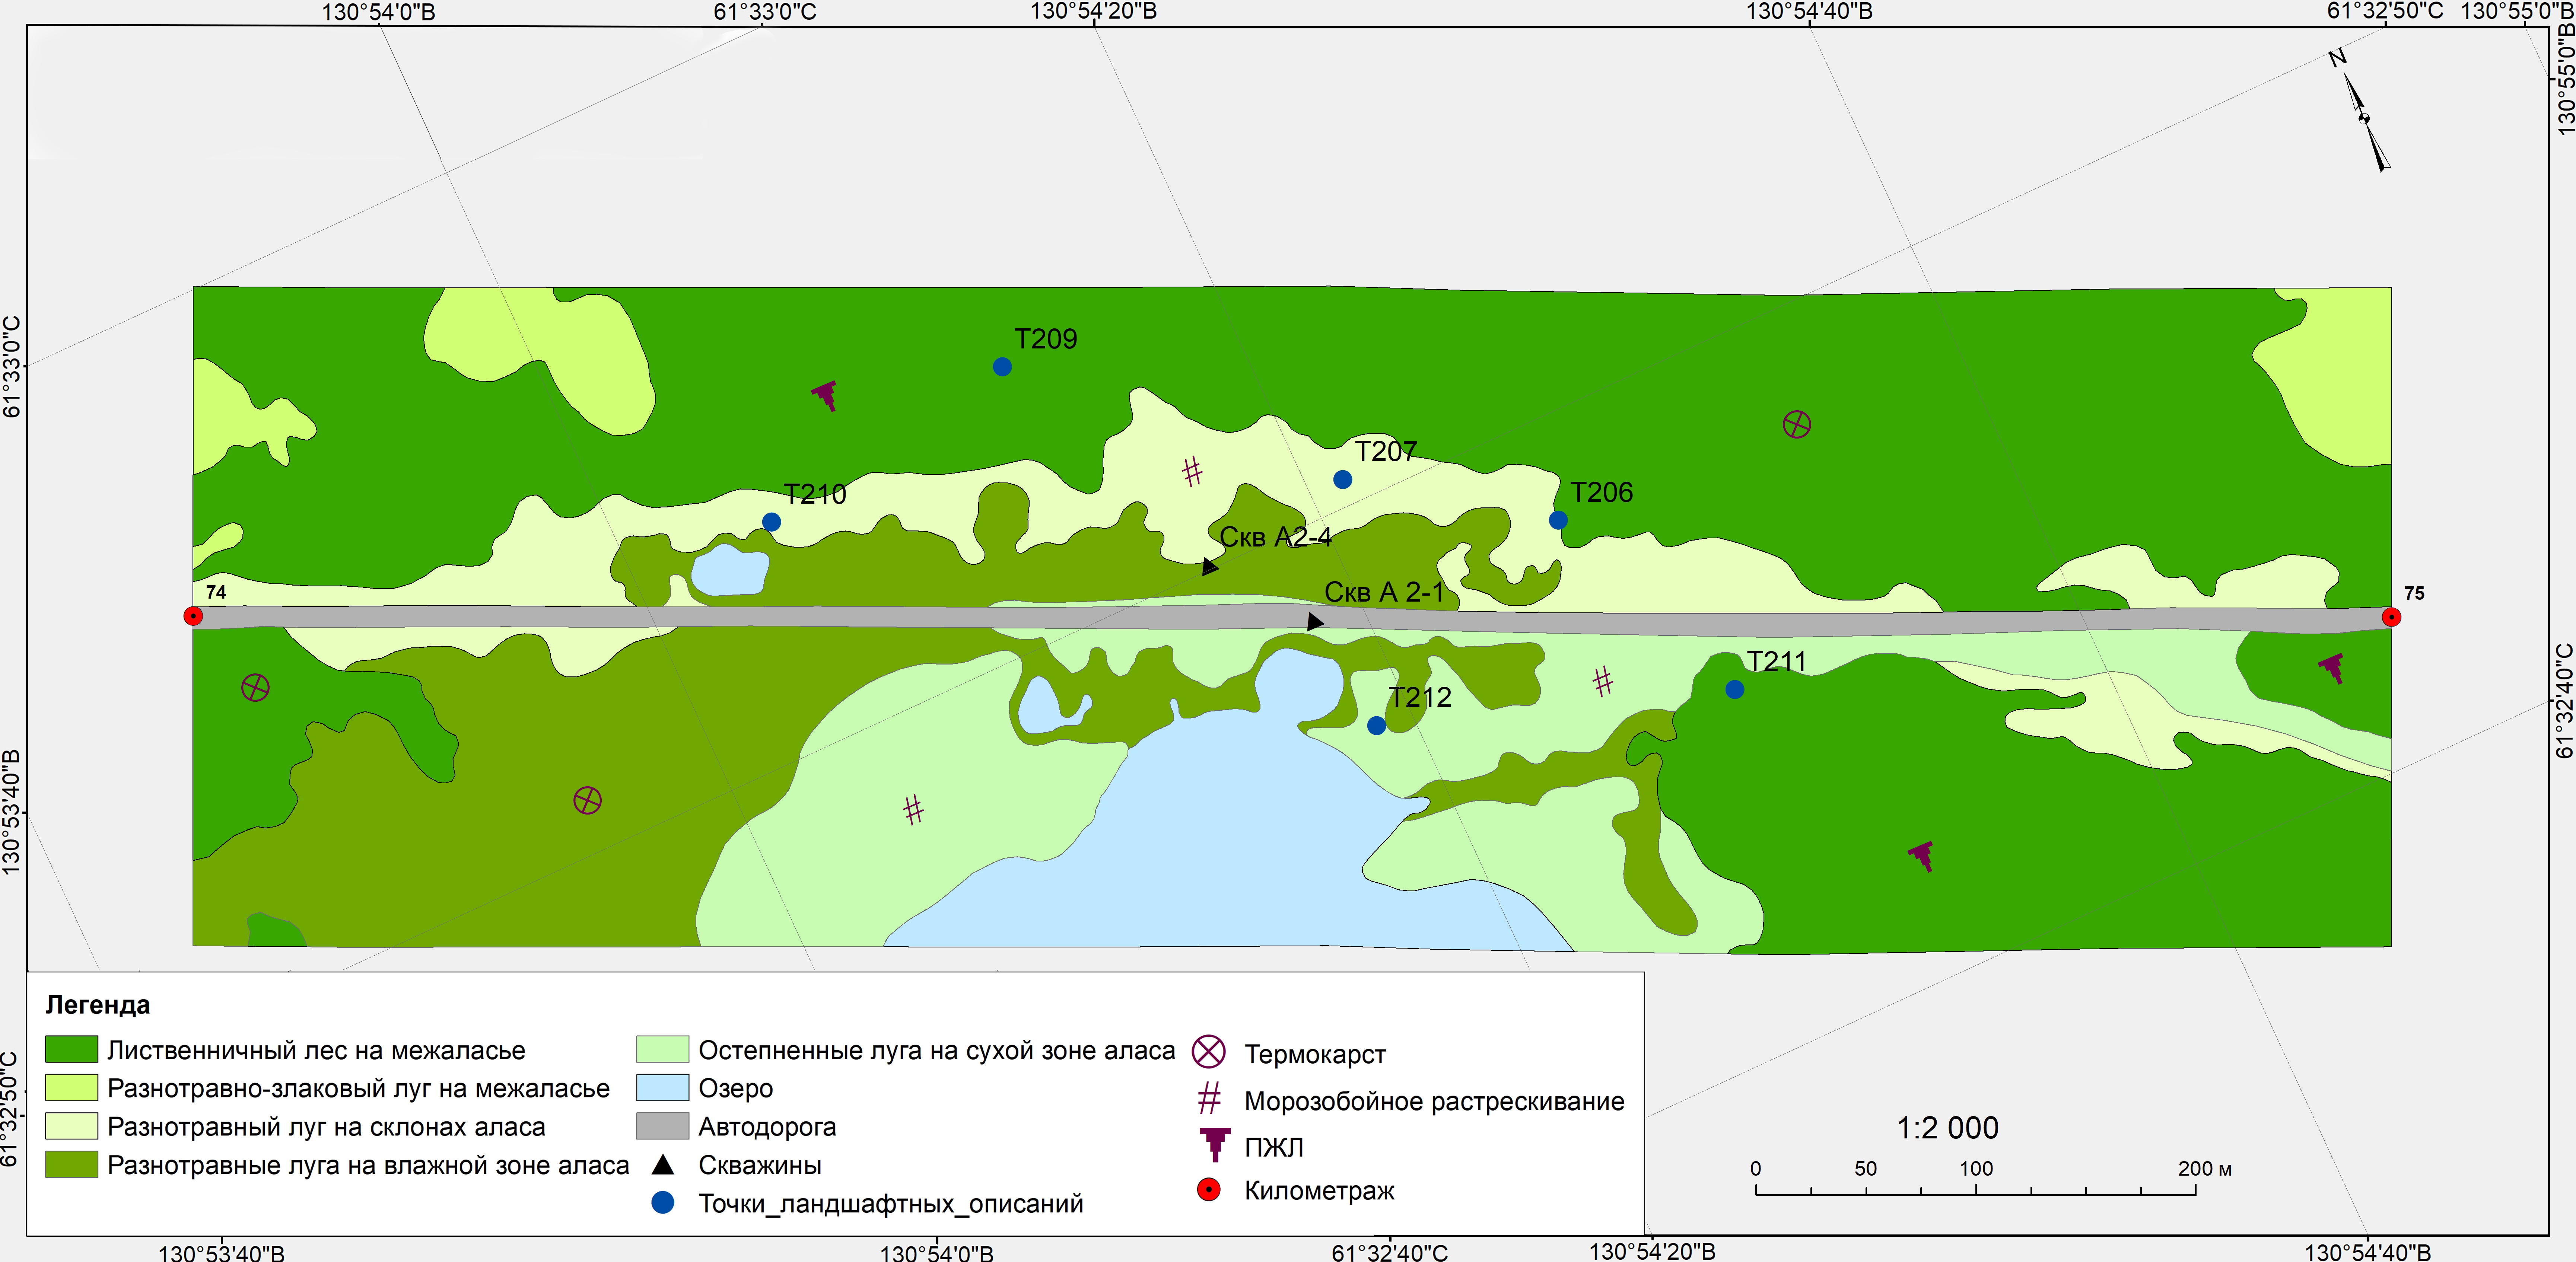 Инженерно-геокриологическая карта участка А-2 автодороги «Амга» 